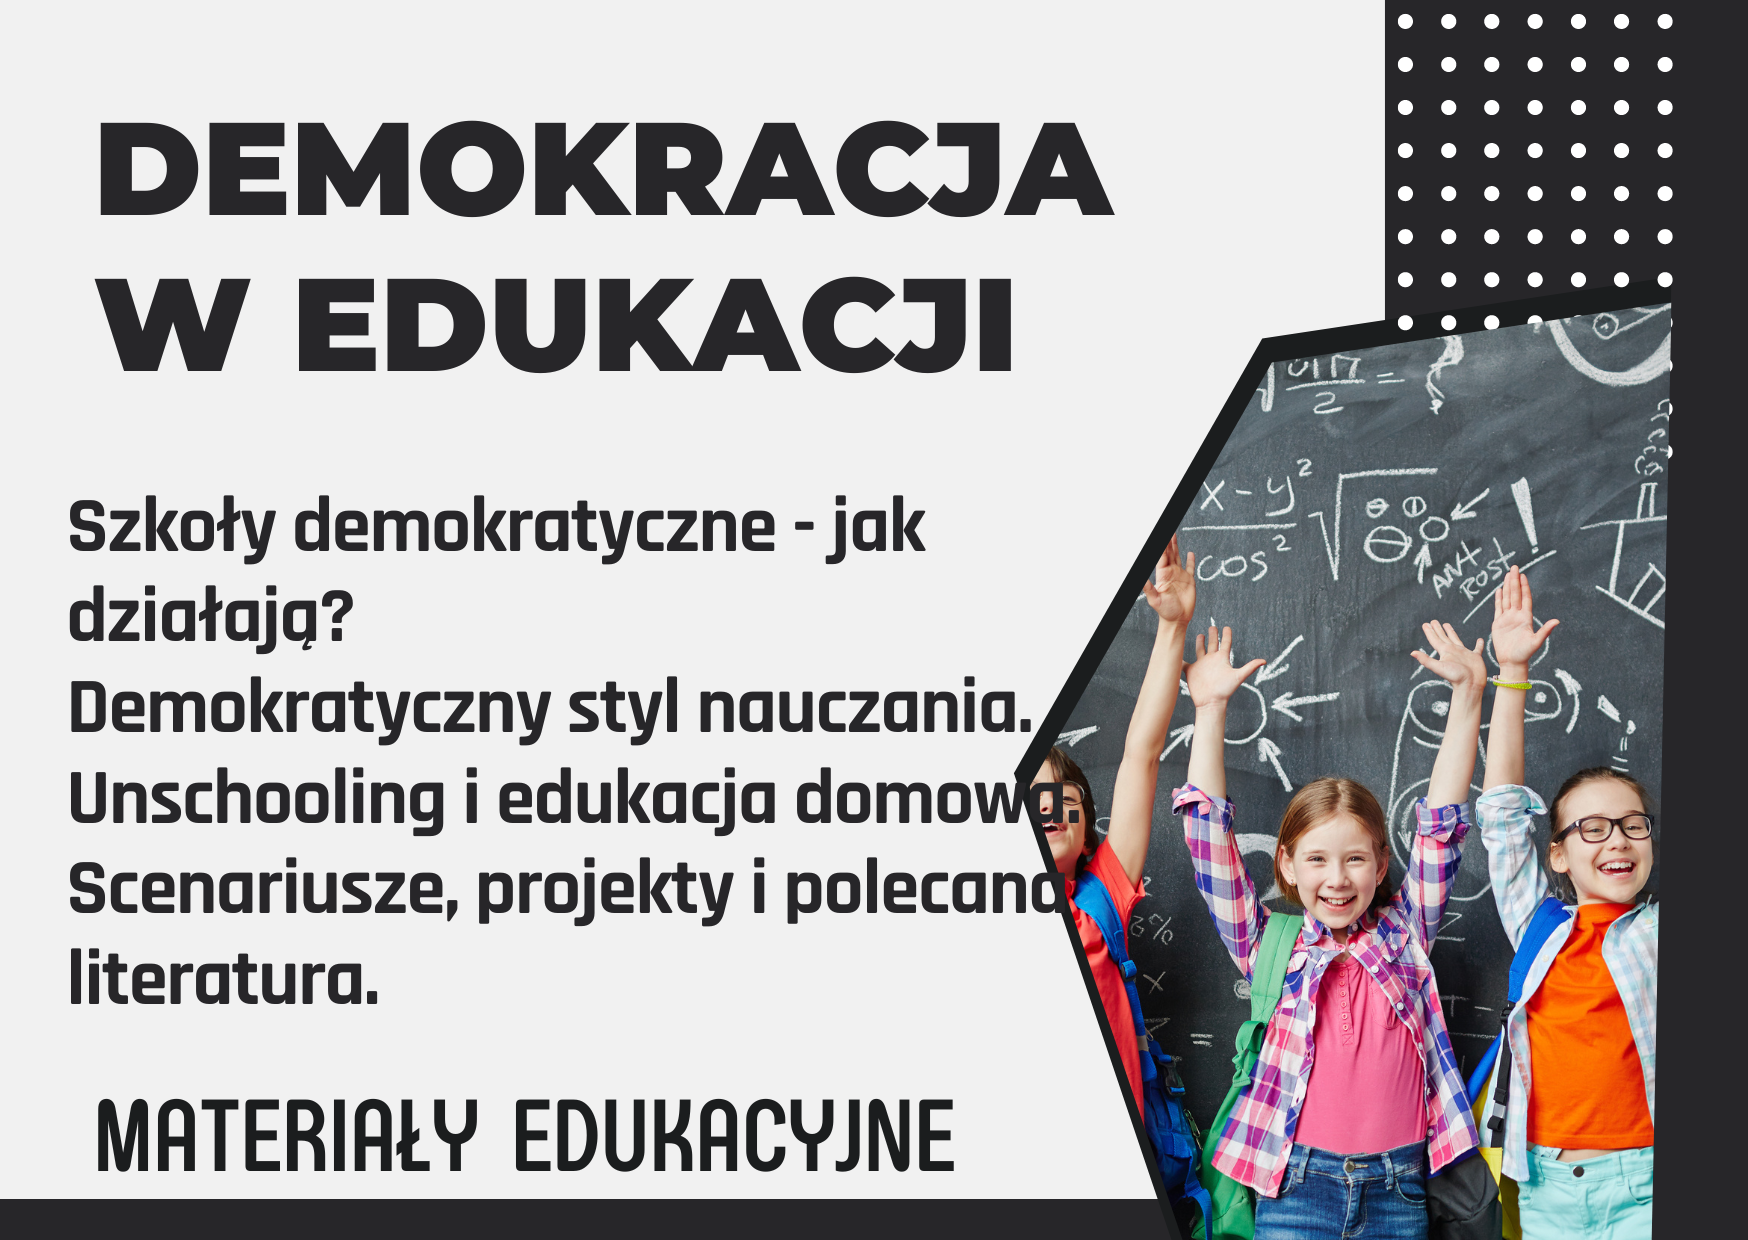 Demokracja w edukacji: materiały edukacyjne